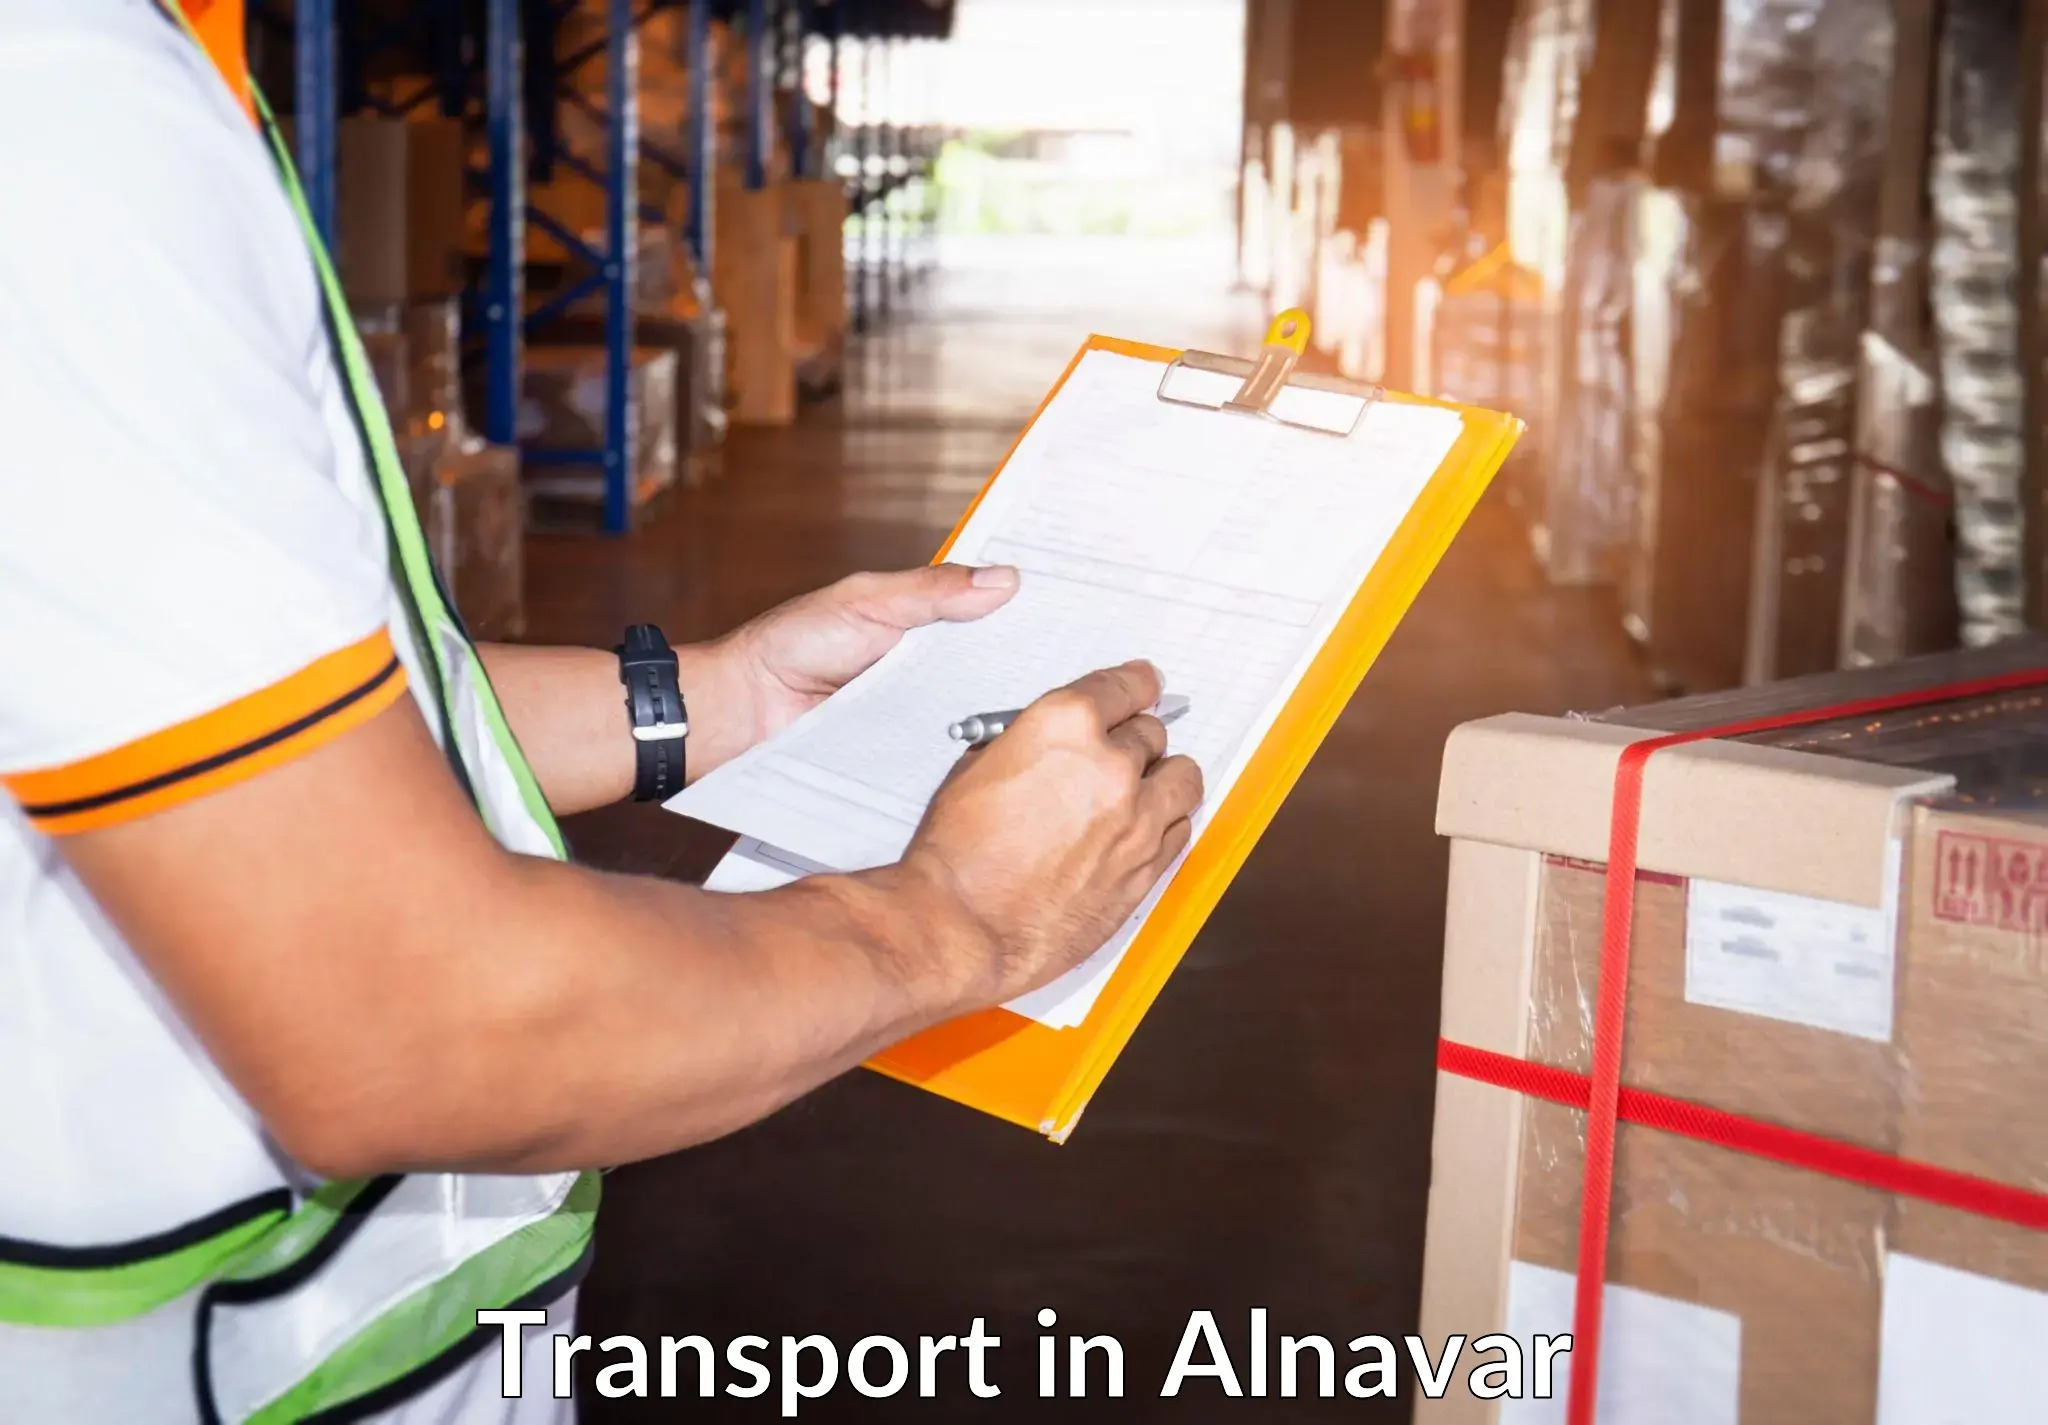 Land transport services in Alnavar